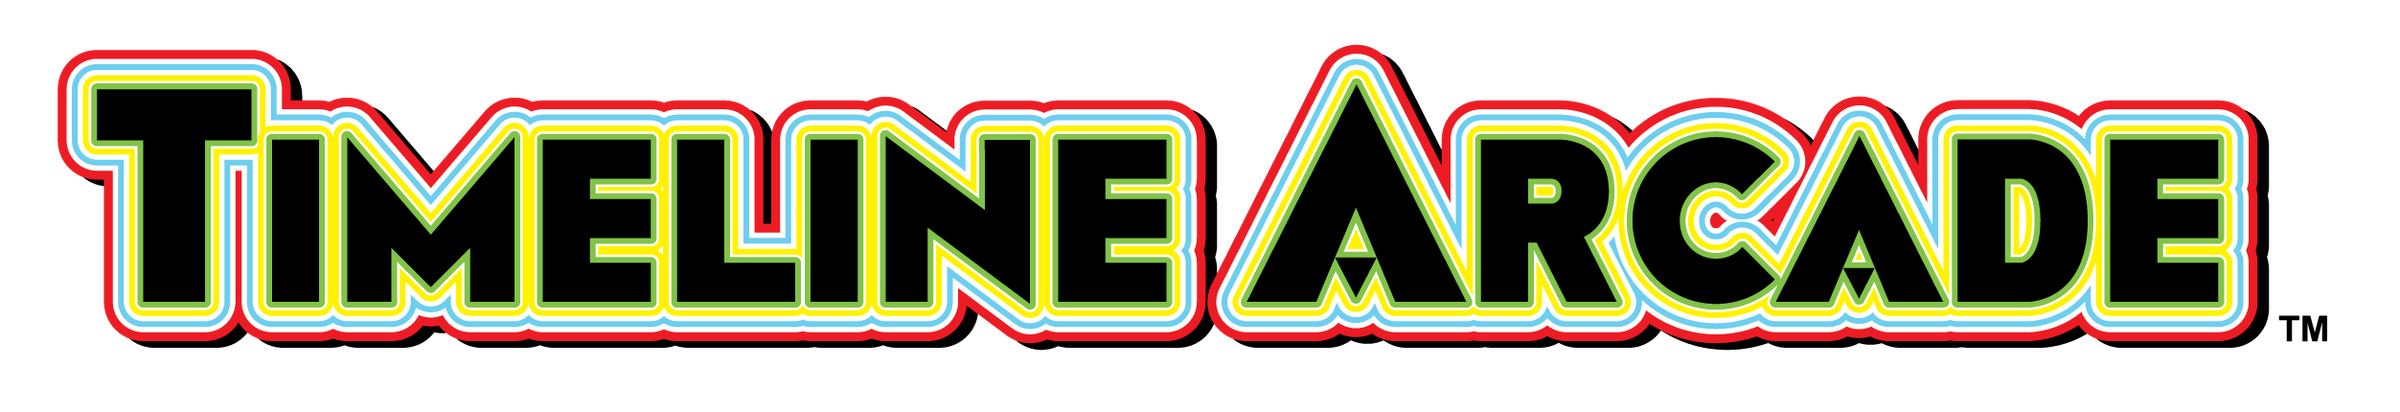 arcade logo